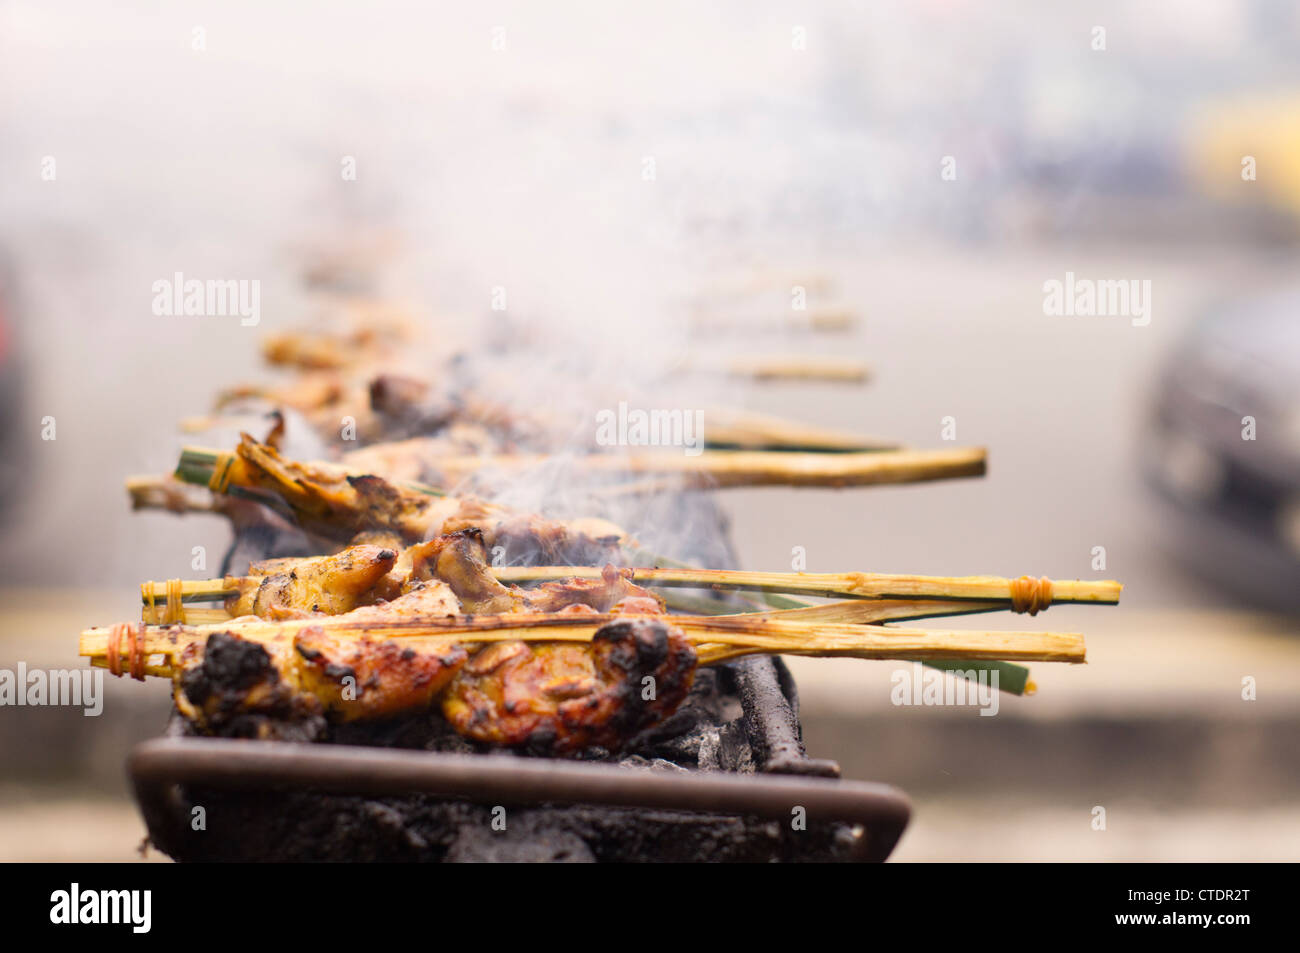 Ayam Percik provient de la côte est de la Malaisie, un poulet mariné, baignant dans une sauce coco épicé et grillé sur charbon de bois. Banque D'Images